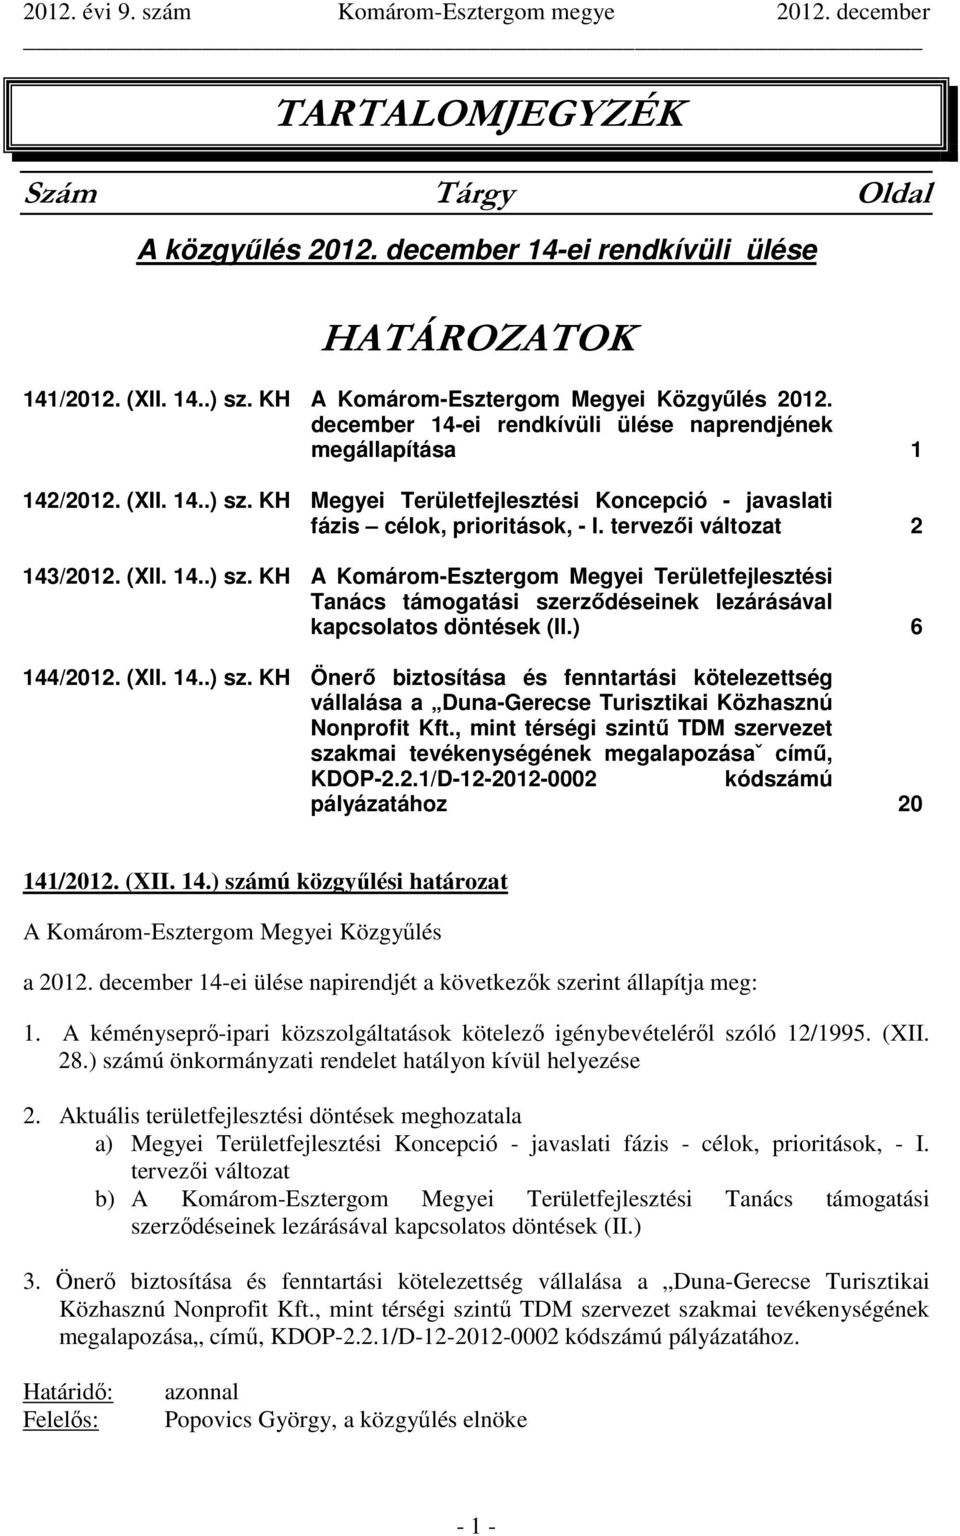 (XII. 14..) sz. KH A Komárom-Esztergom Megyei Területfejlesztési Tanács támogatási szerződéseinek lezárásával kapcsolatos döntések (II.) 6 144/2012. (XII. 14..) sz. KH Önerő biztosítása és fenntartási kötelezettség vállalása a Duna-Gerecse Turisztikai Közhasznú Nonprofit Kft.